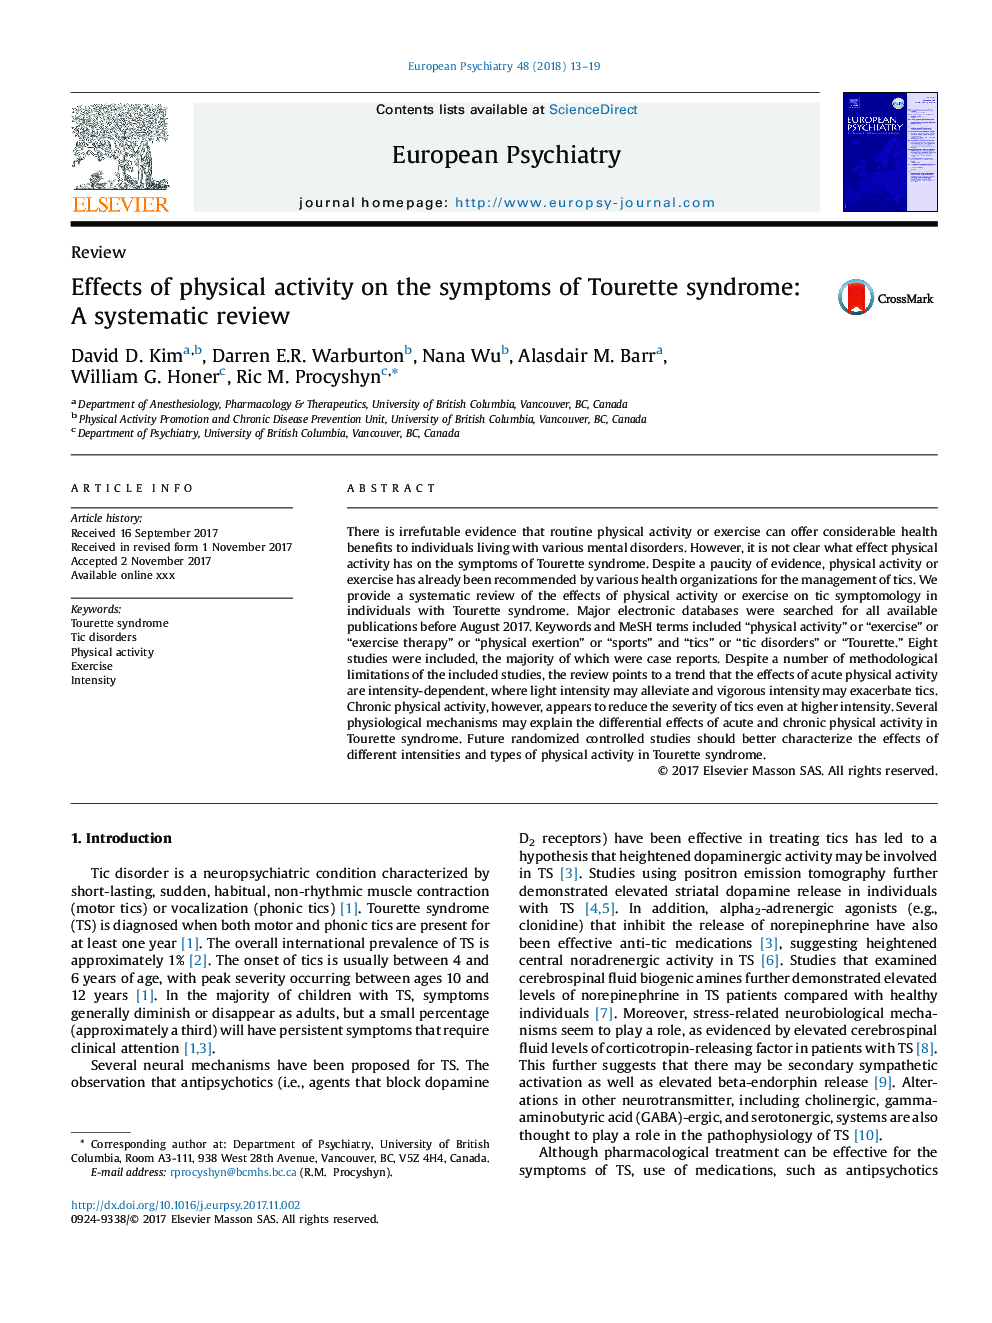 تأثیر فعالیت بدنی بر علائم سندرم تورات: یک بررسی سیستماتیک 